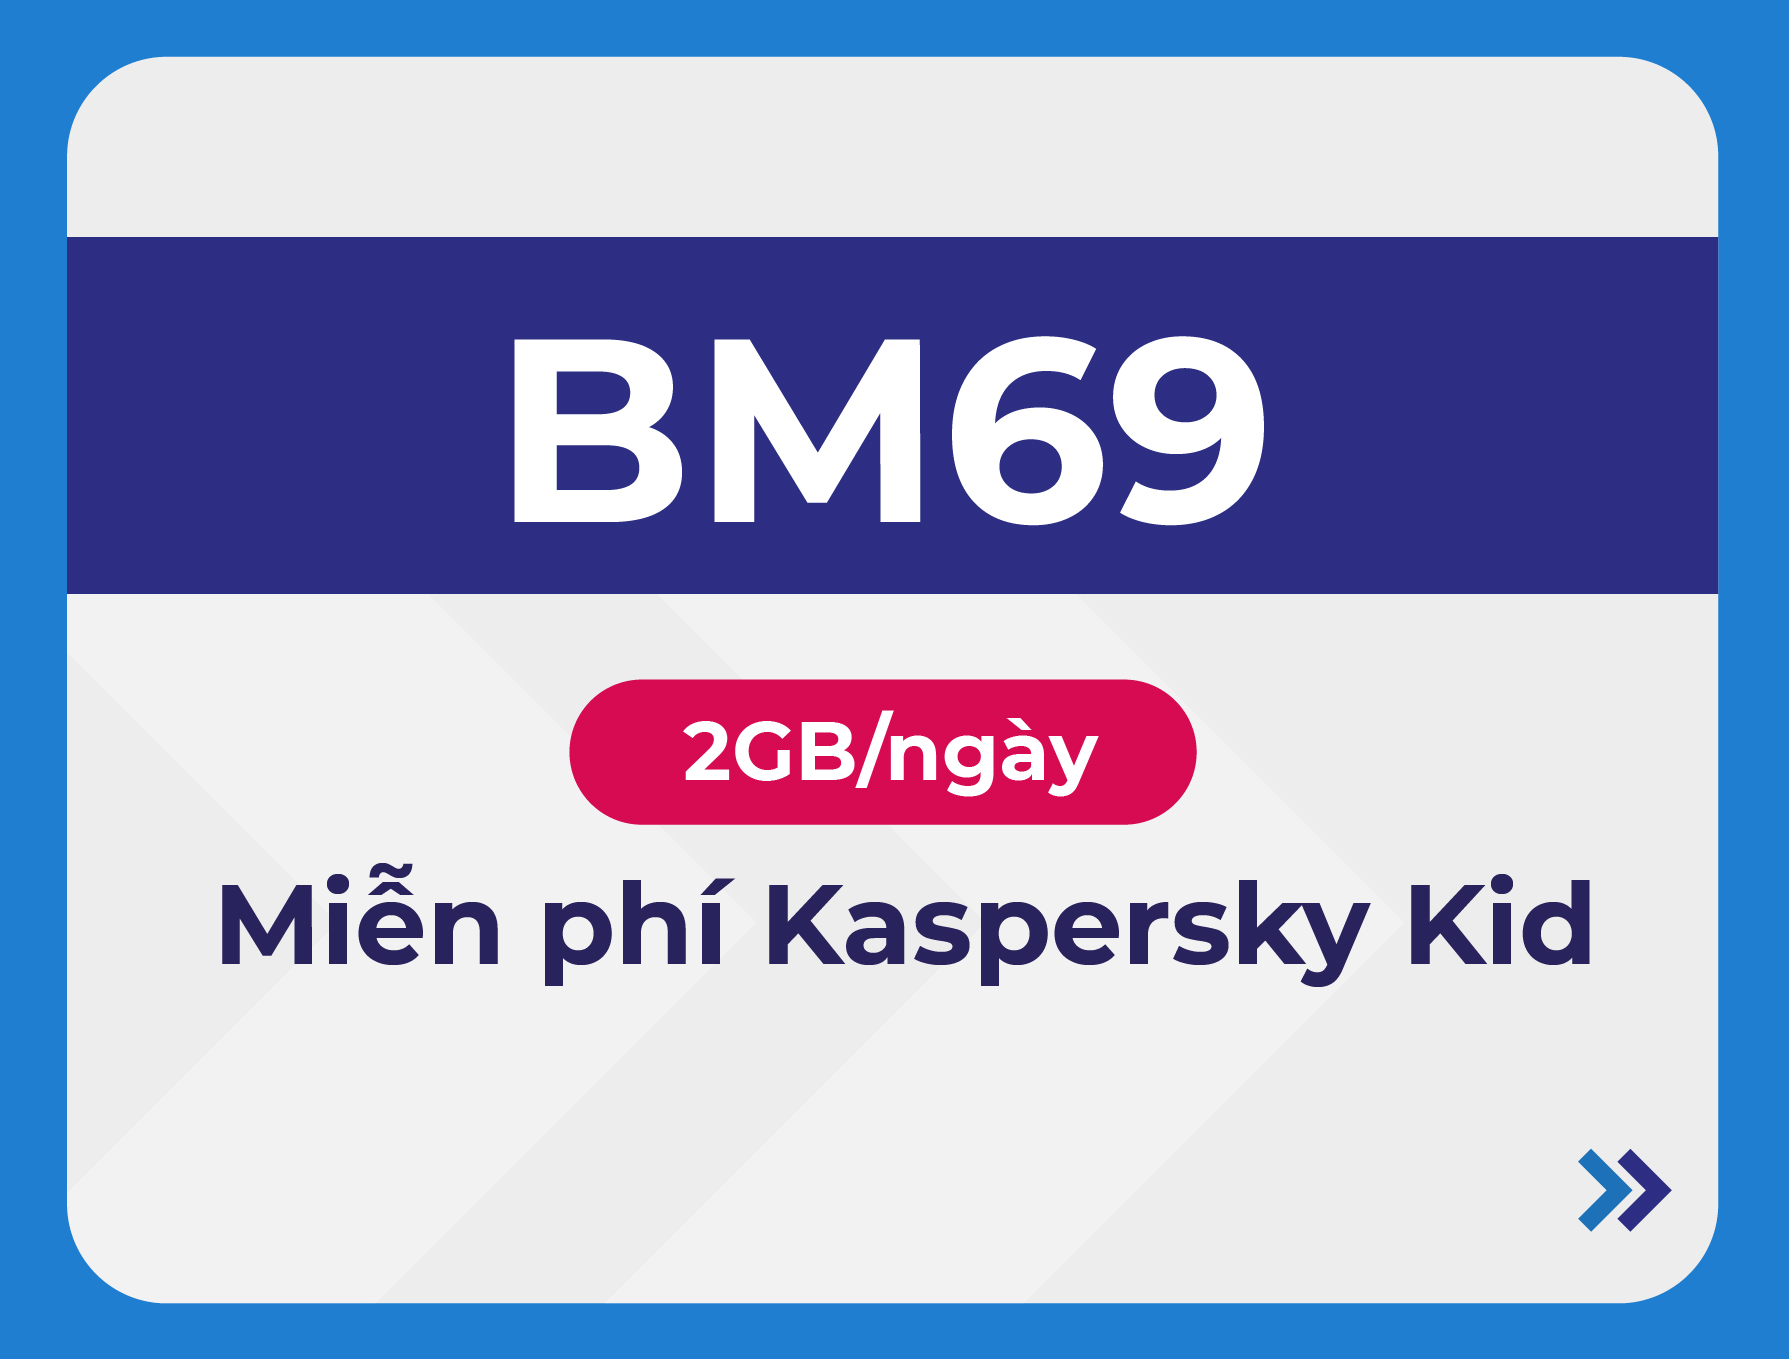 BM69